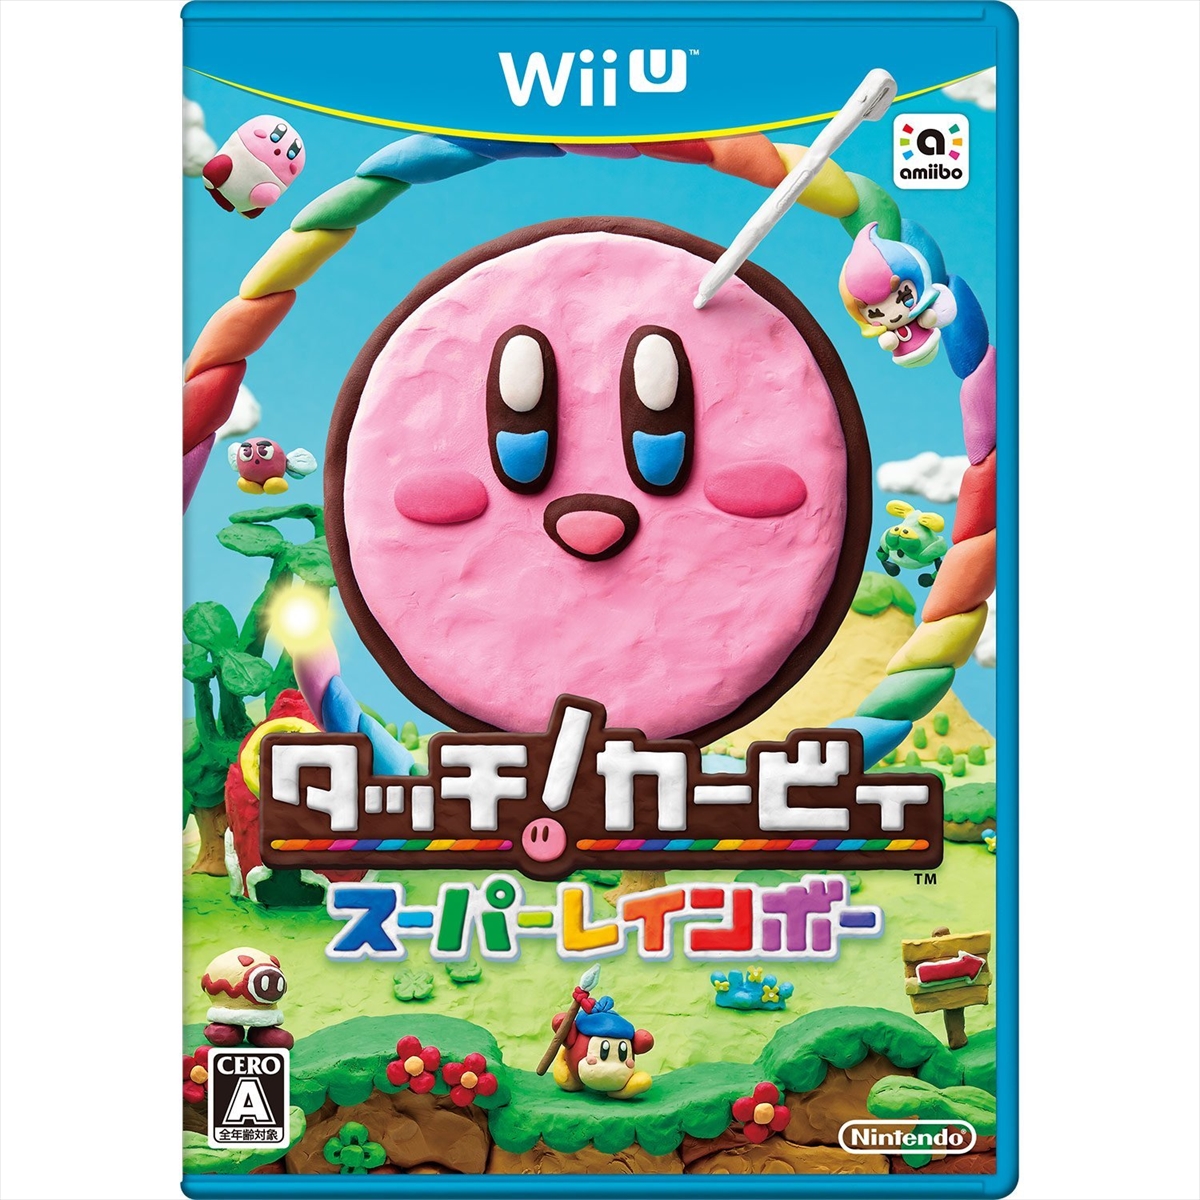 楽天市場 Wiiu ニンテンドーwii U ウィーユー タッチ カービィ スーパーレインボー ソフト 任天堂 Nintendo 中古 Iimo リユース店